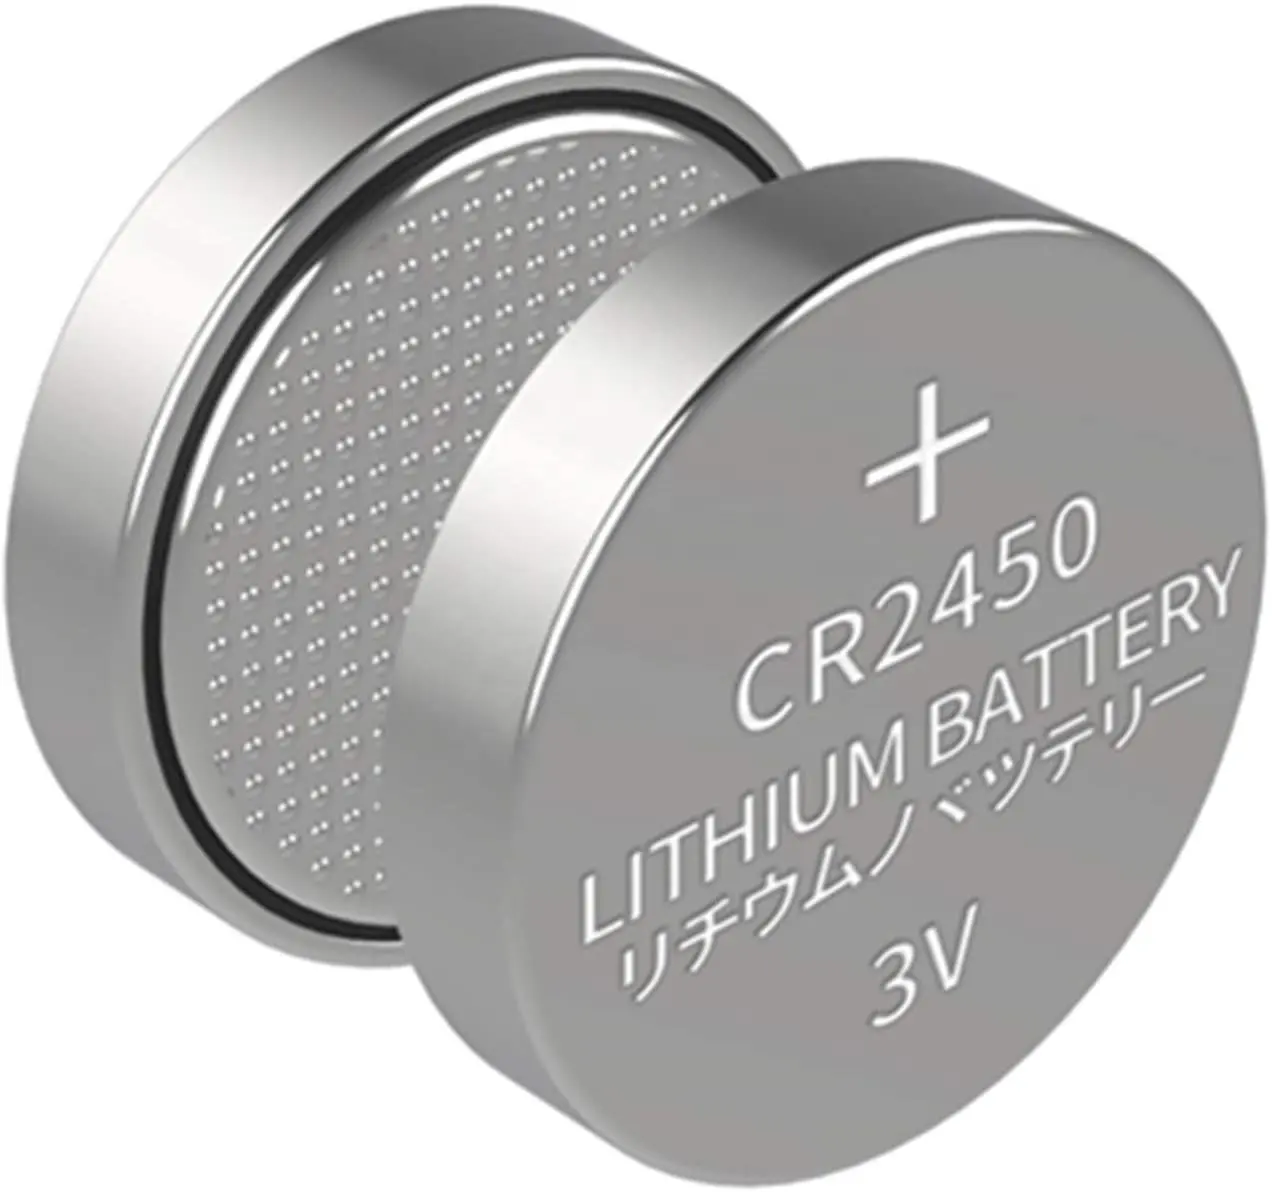 Baterias recarregáveis de botão CR2450 para relógio, novo estilo 550mAh